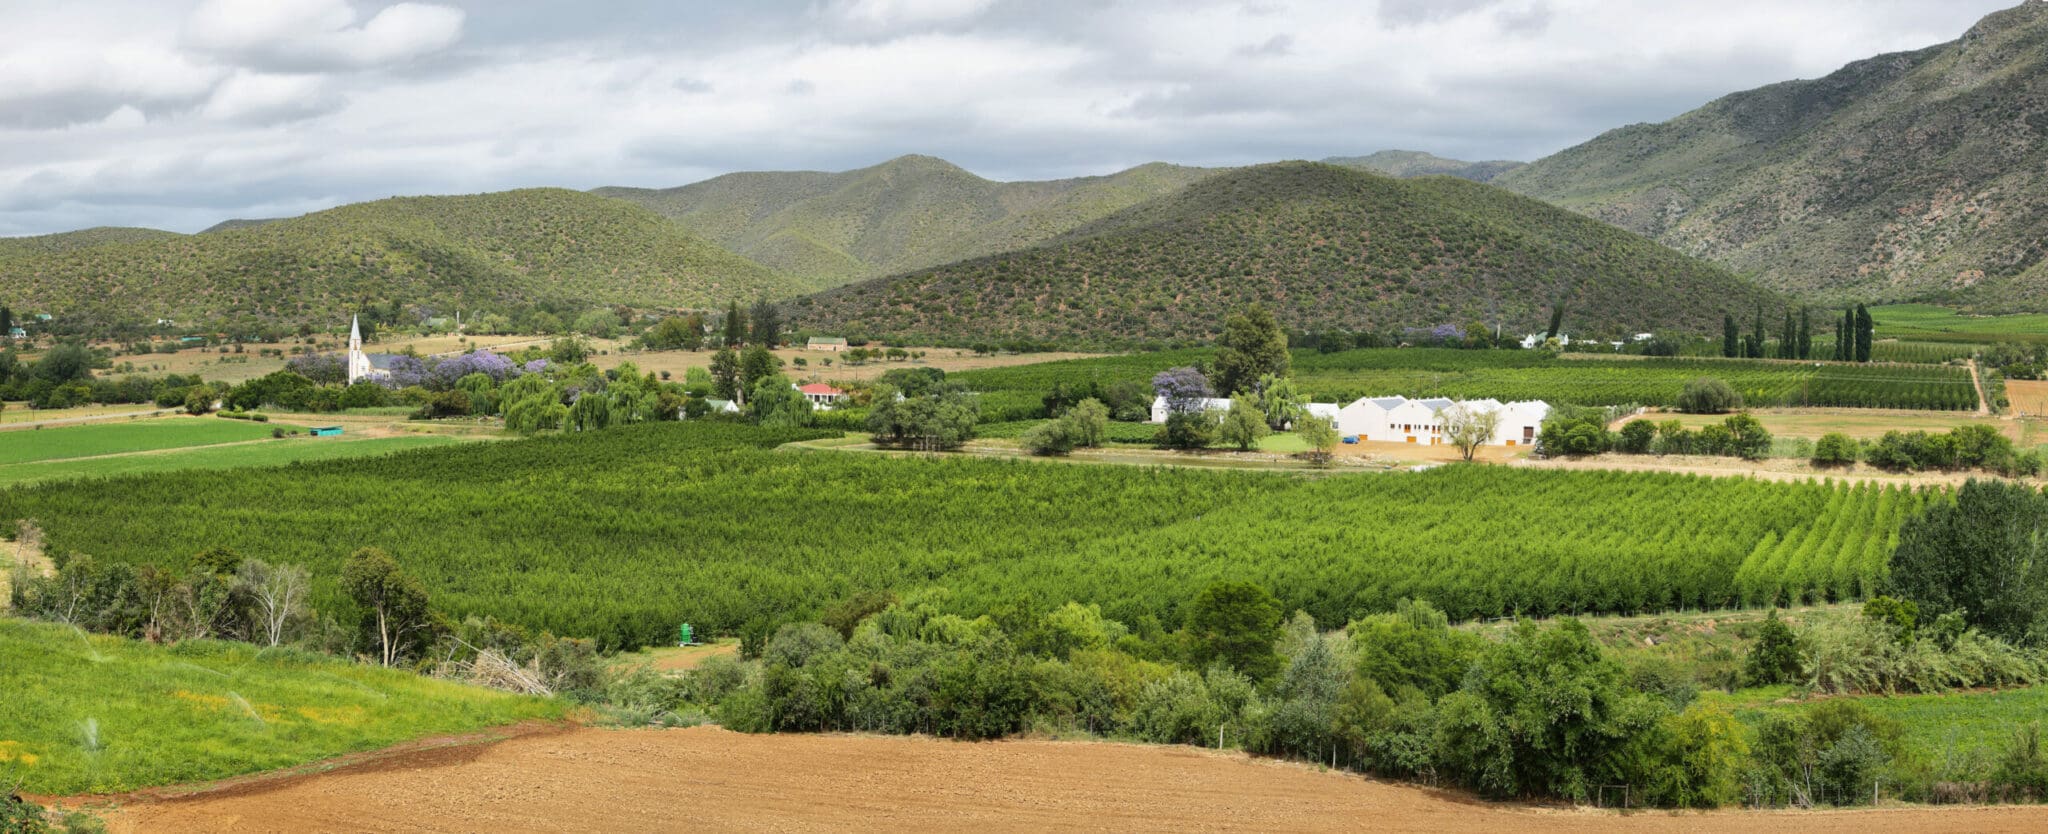 Südafrikanische Weine und Olivenöl - Über Kapvinum